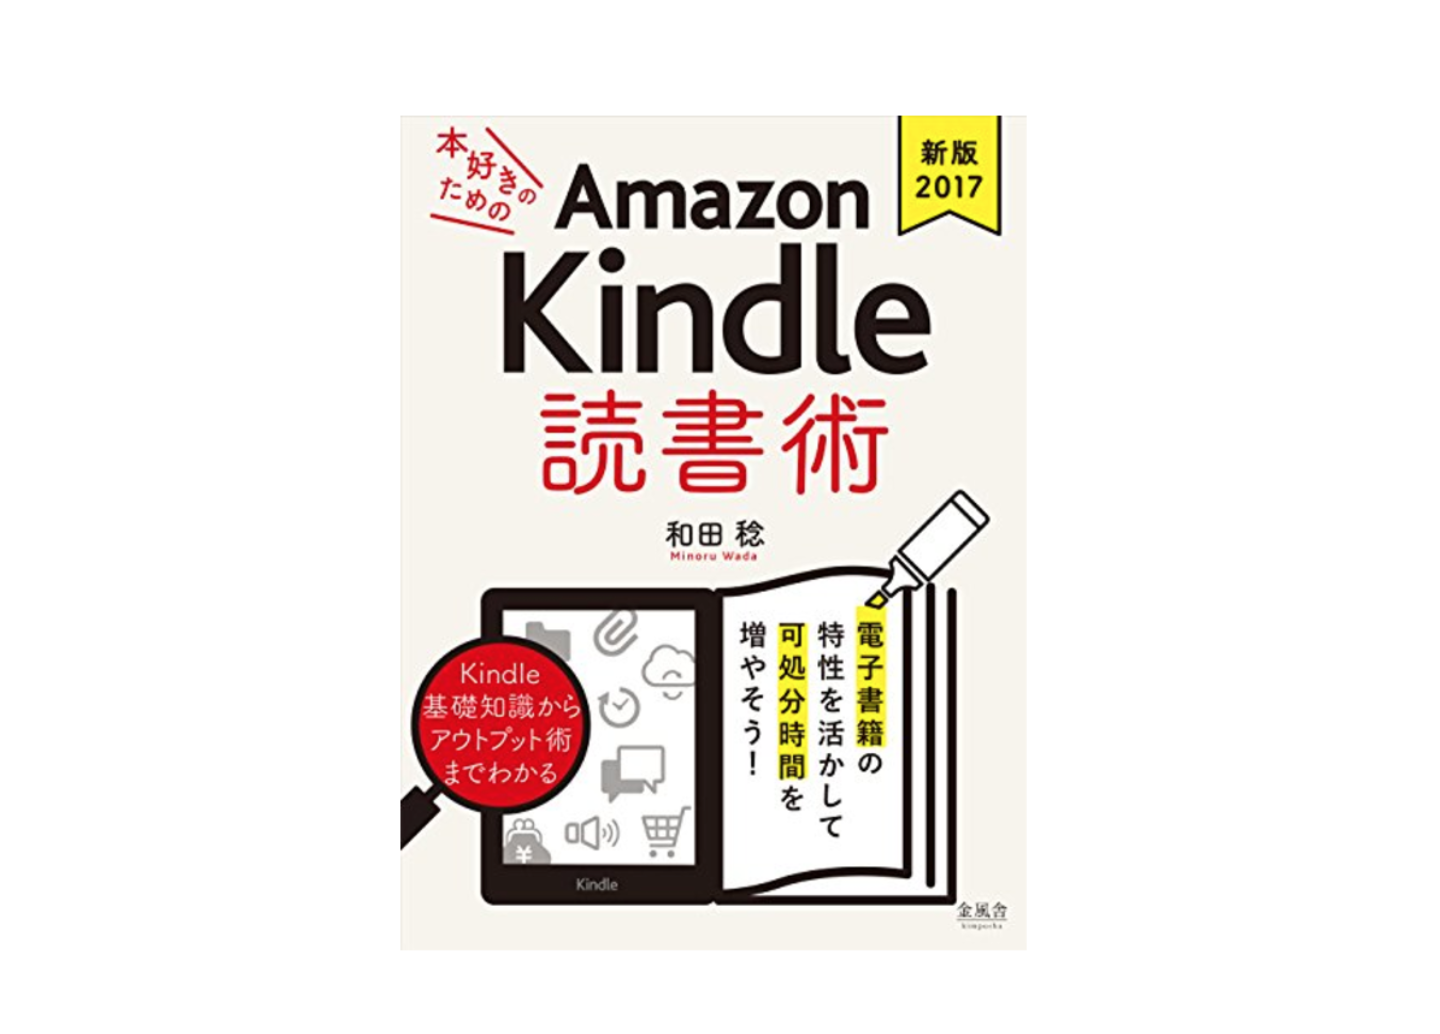 「《新版2017》本好きのためのAmazon Kindle 読書術」が7月の月替わりセールに選ばれました！